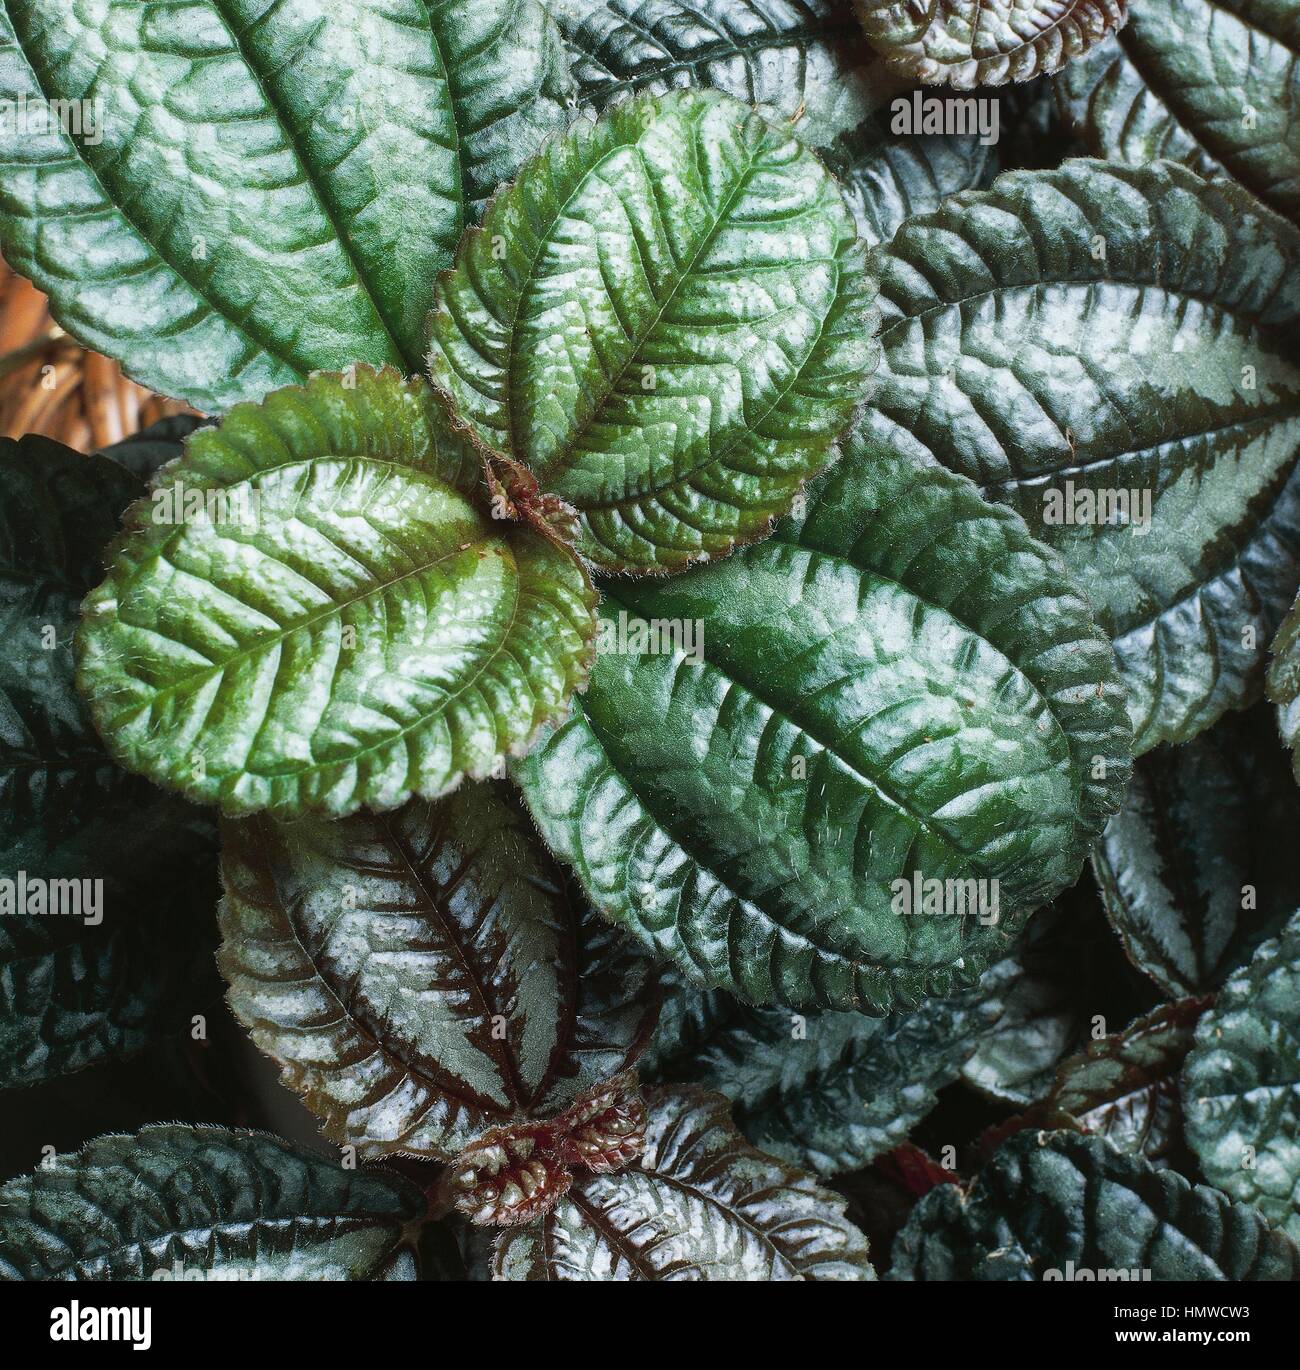 Norfolk friendship plant (Pilea spruceana Norfolk), Urticaceae. Stock Photo